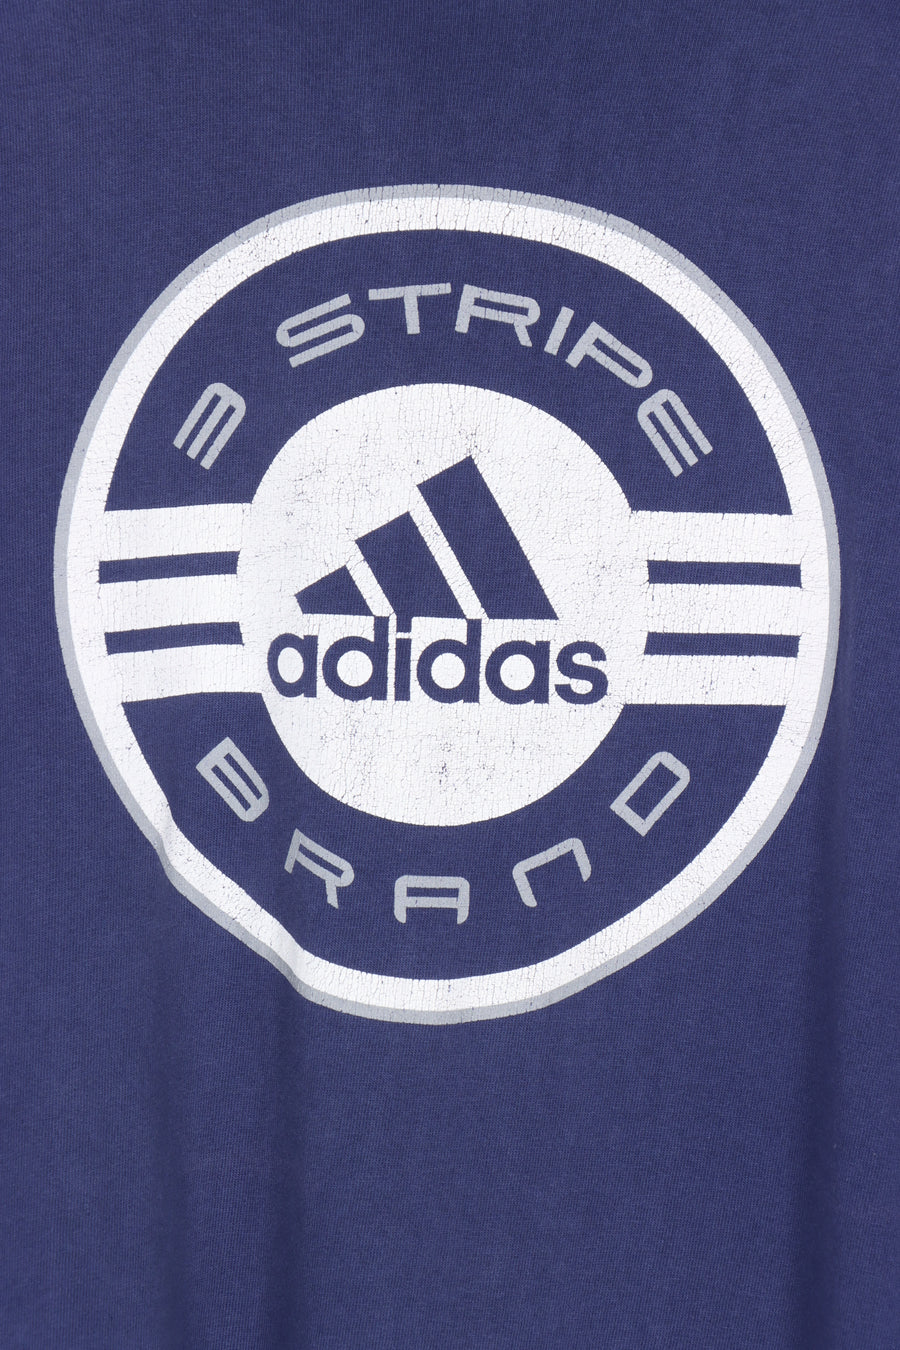 ADIDAS 3-Stripe Brand Navy & White Graphic Tee (XXL-XXXL)